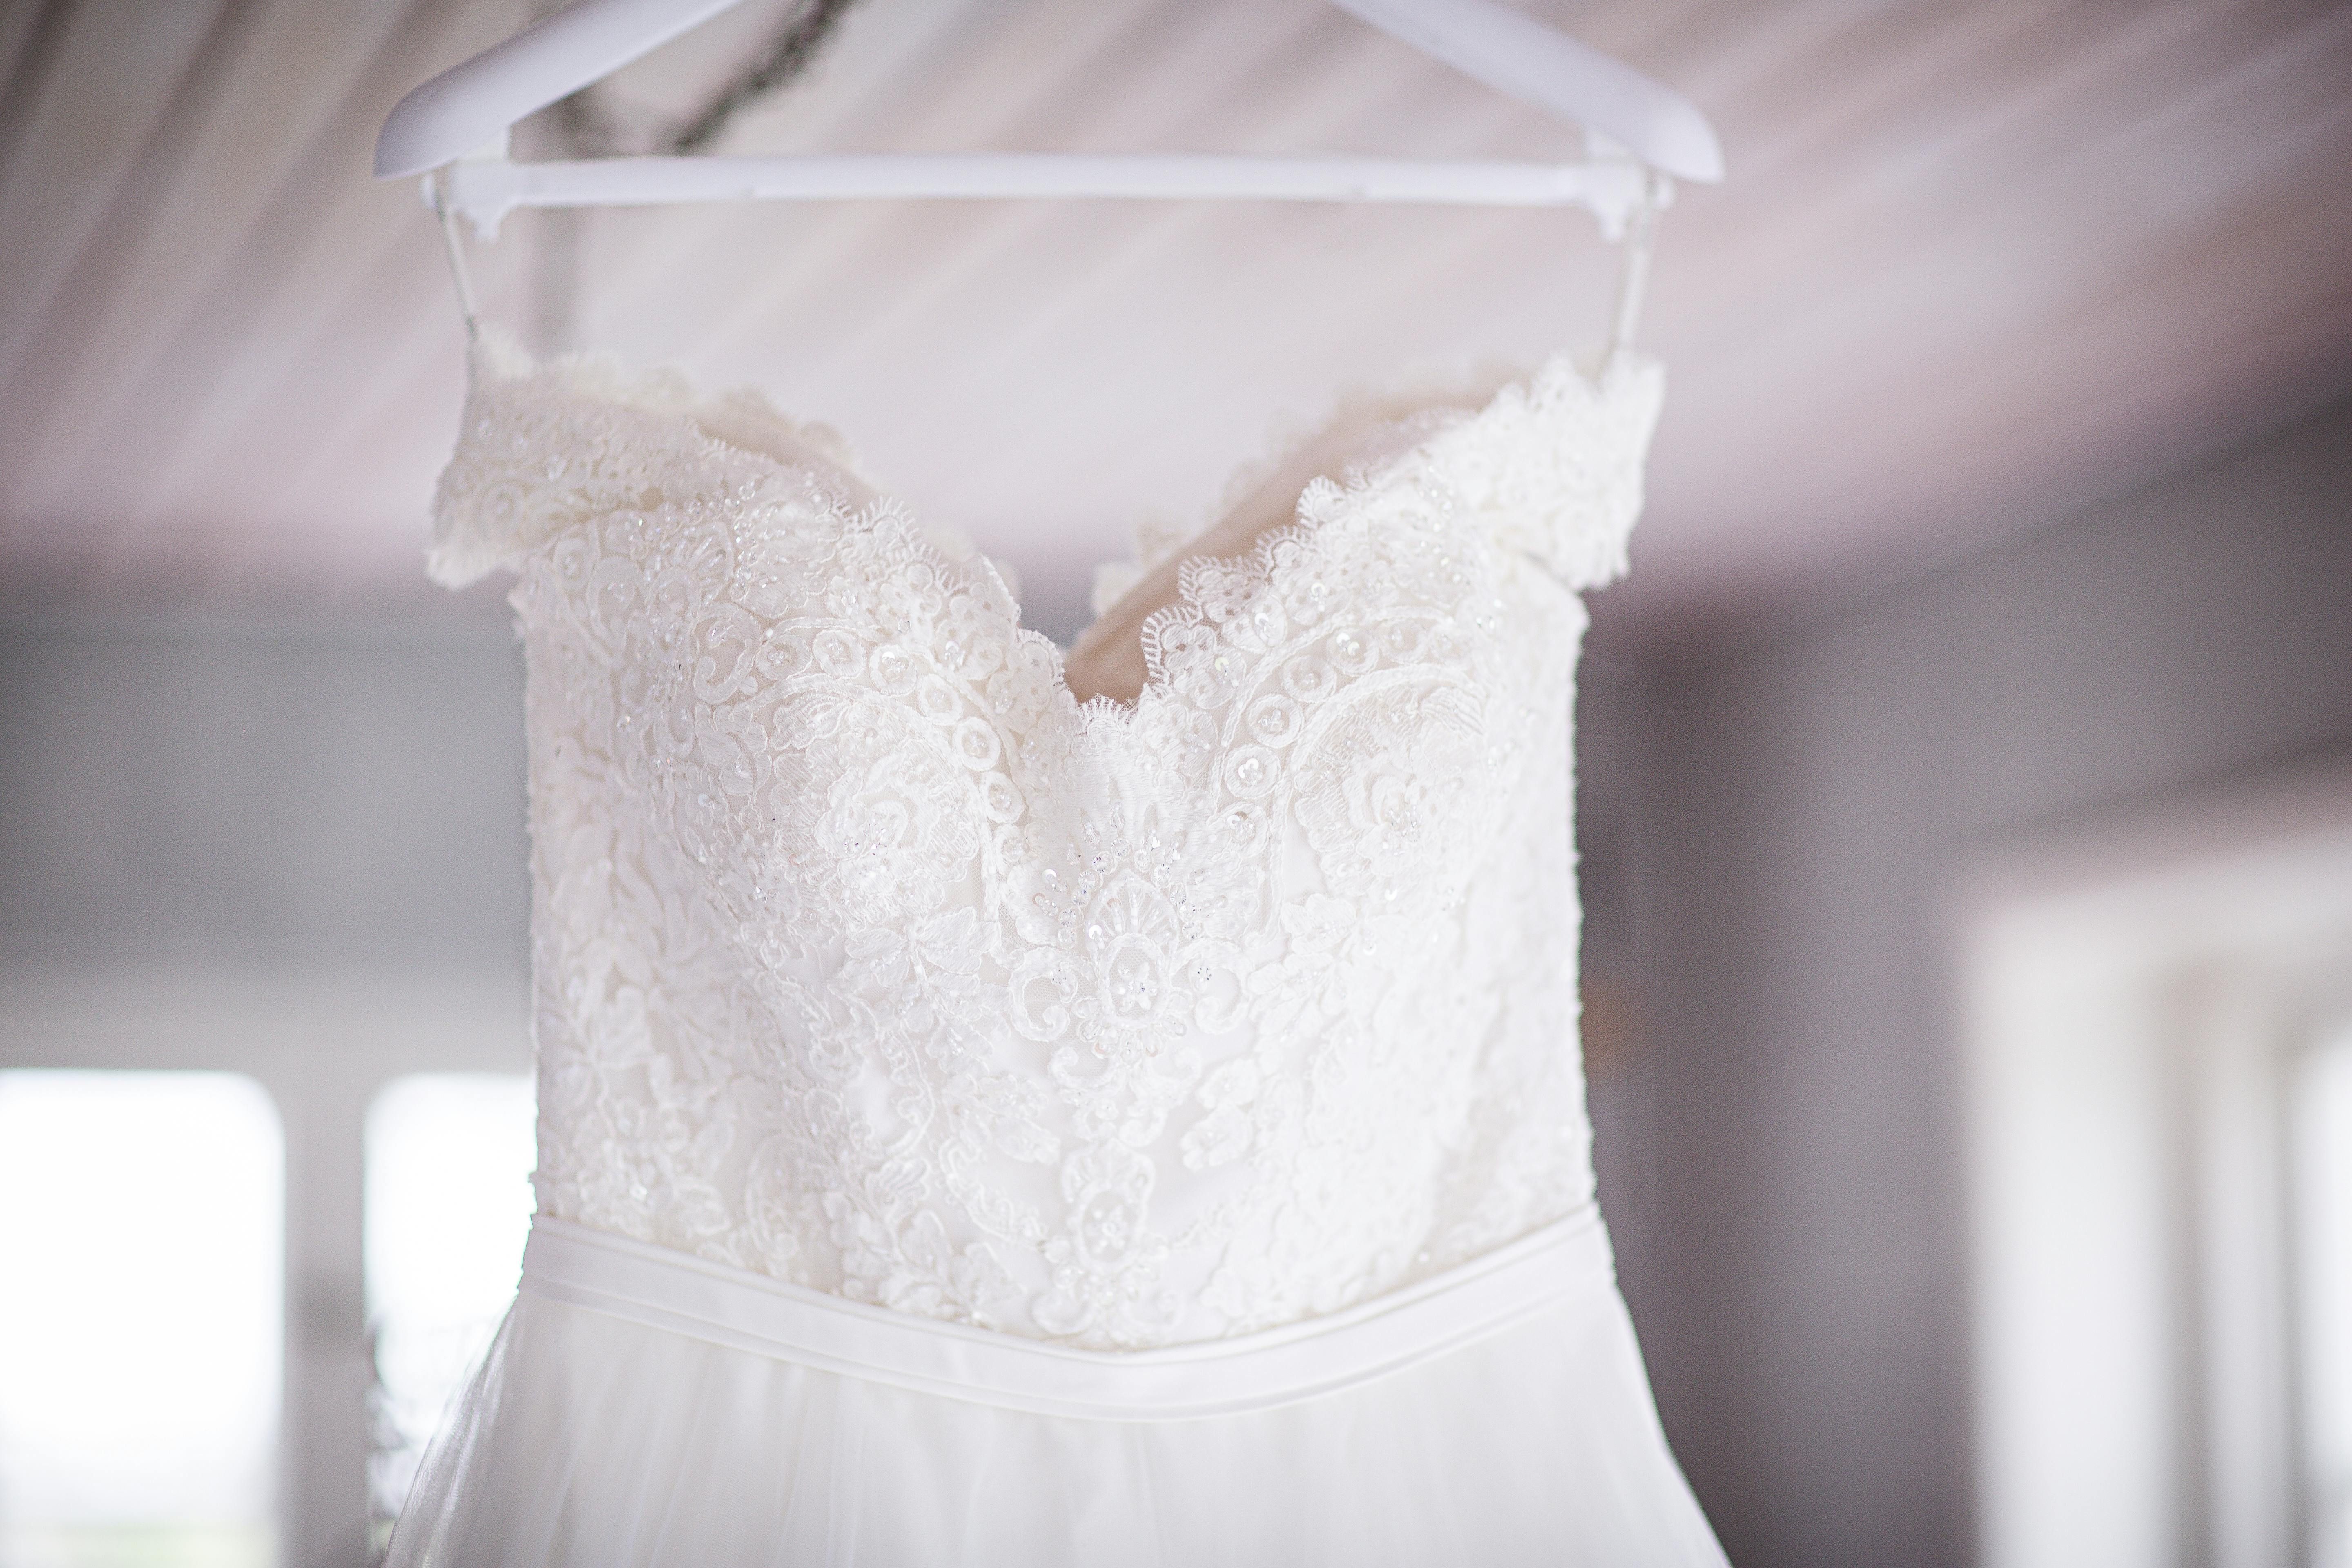 Жених случайно потерял свадебное платье любимой за 2 тысячи долларов